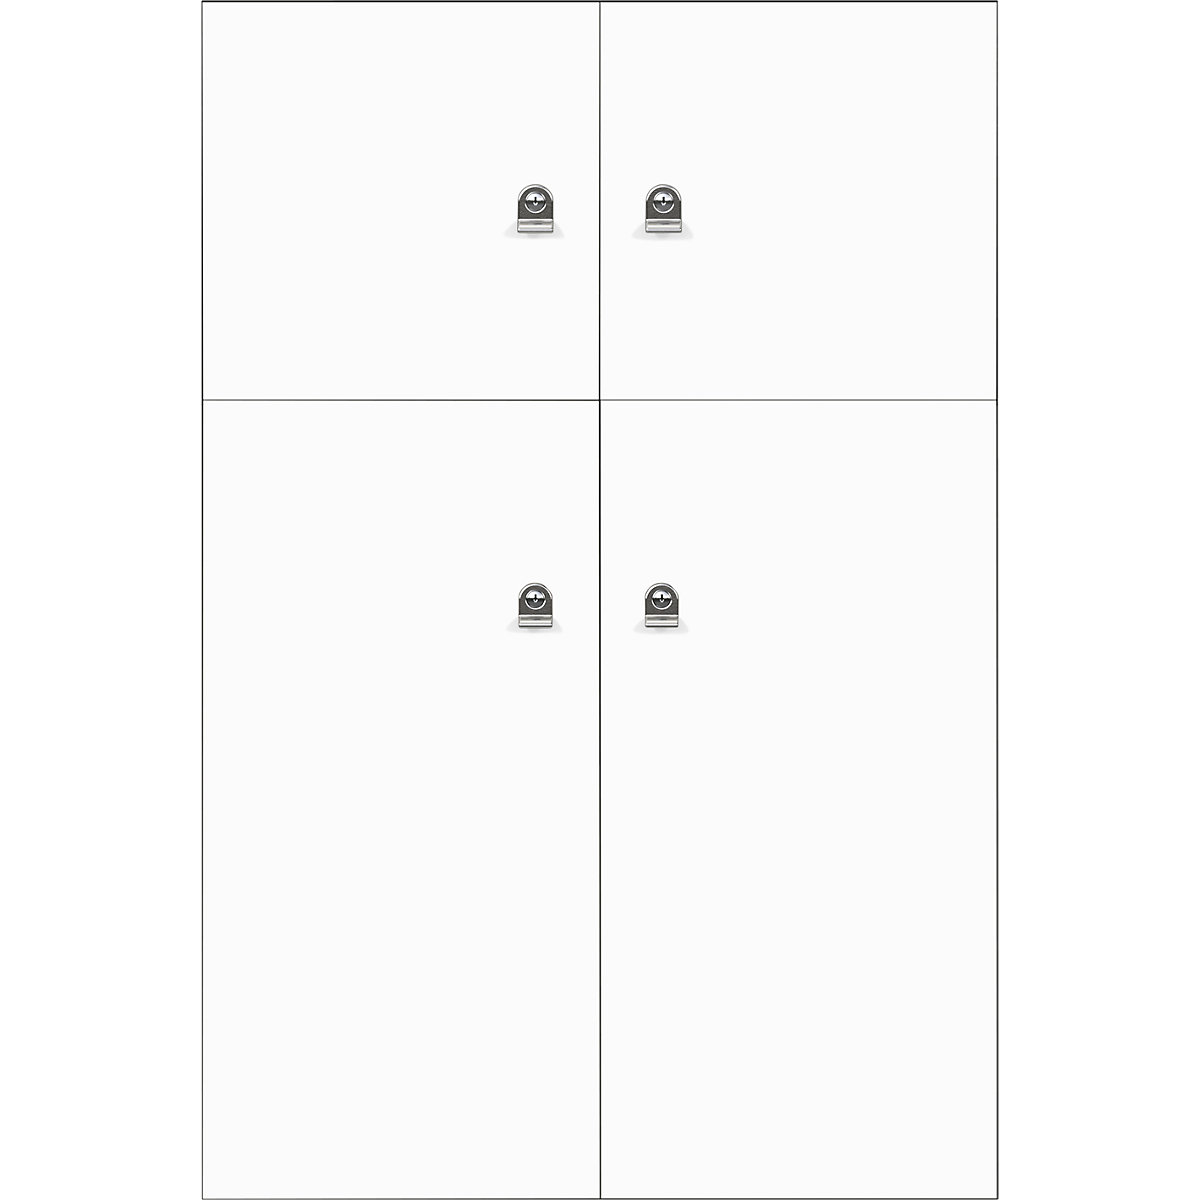 Omara s predelki z zaklepanjem LateralFile™ – BISLEY, 4 predelki z zaklepanjem, višina 2 x 375 mm, 2 x 755 mm, prometno bele barve-32